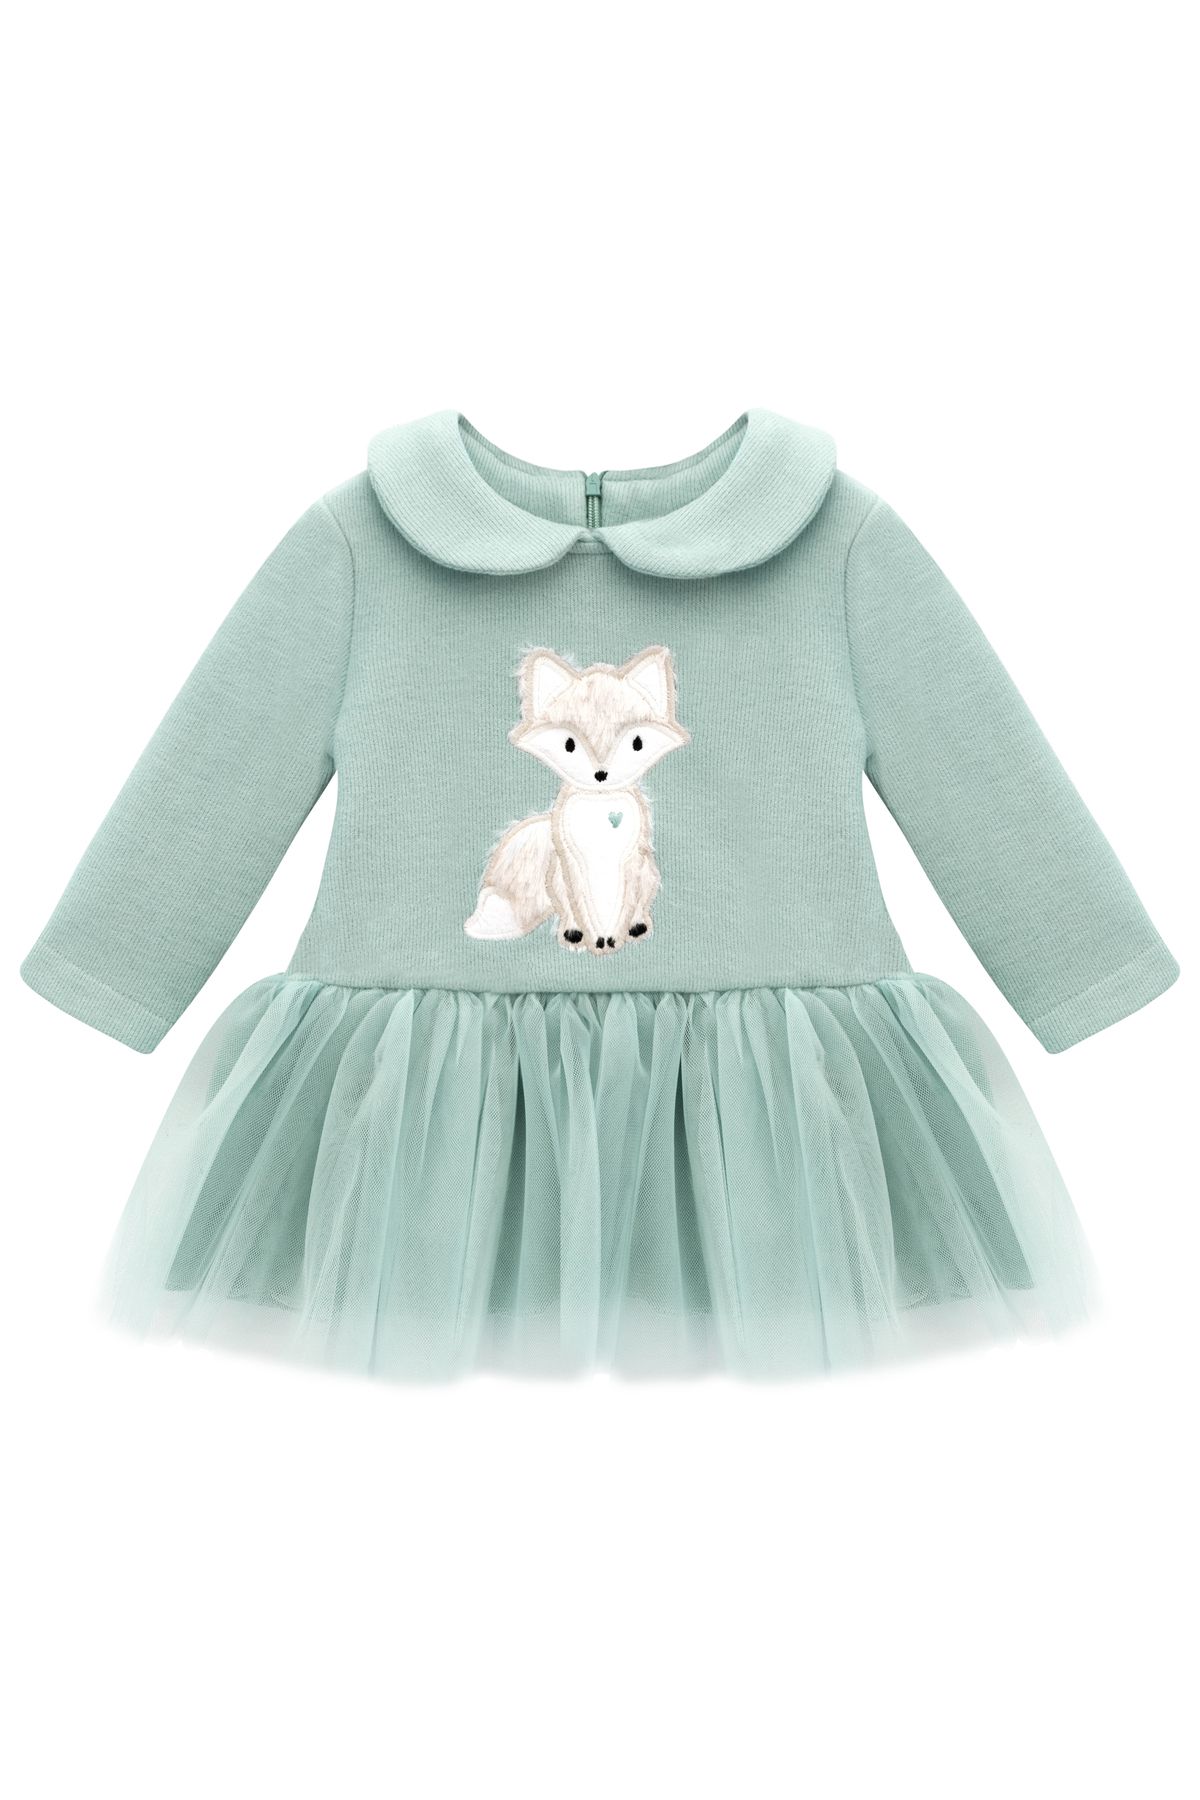 Lilax Kız Bebek Elbise Nakışlı Tüllü Polo Yaka Doğum Günü Mint Yeşili